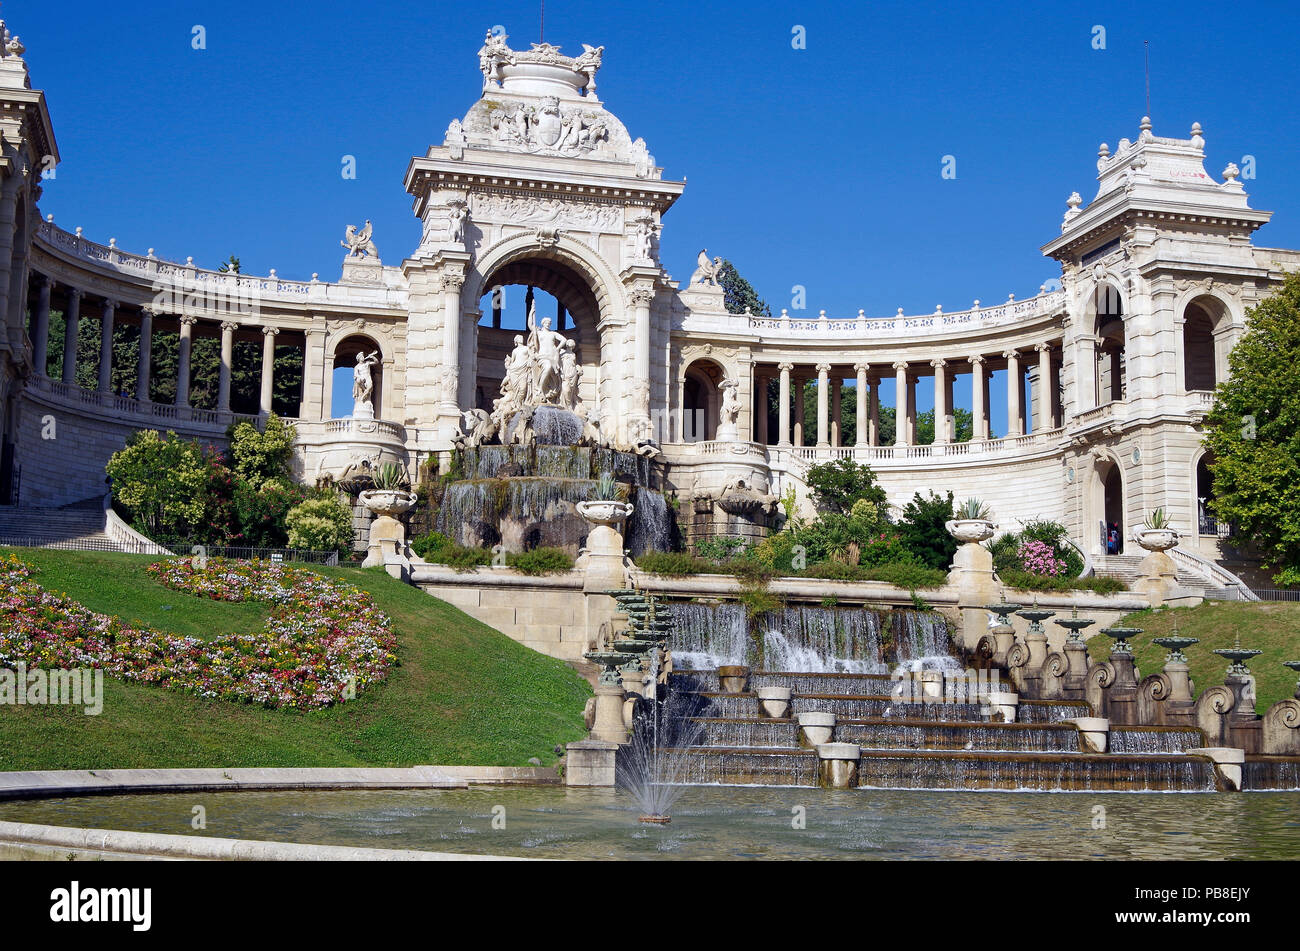 Prospetto Principale del favoloso palazzo Longchamp a Marsiglia, Francia, comprendente 2 musei, castello d'acqua, colonnati, fontane e sculture Foto Stock